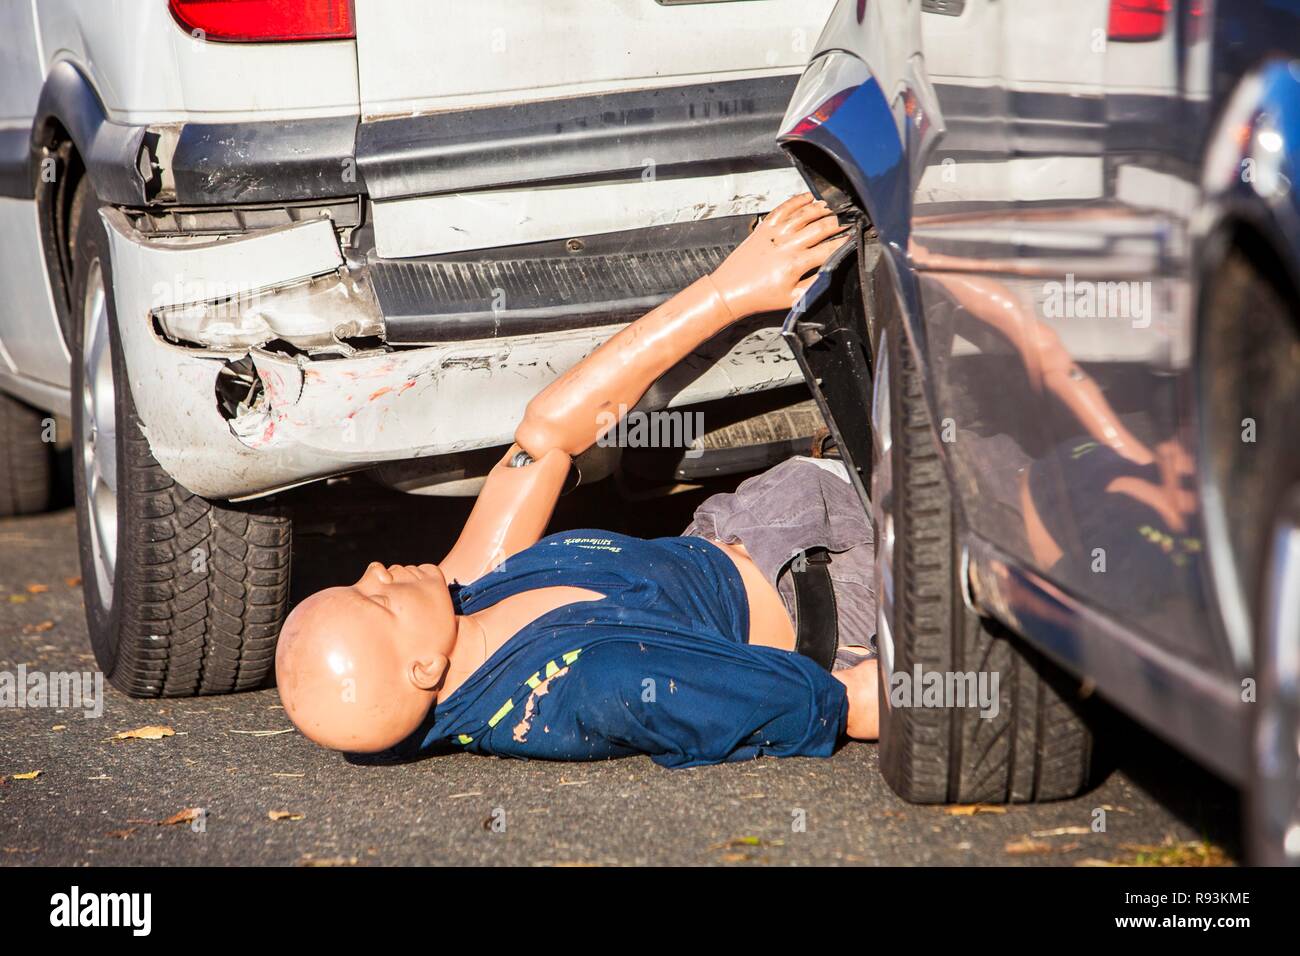 Dummy, Schaufensterpuppe, die für einen Körper, zwischen kollidierenden Fahrzeugen eingekeilt ist, Notfallübung mit zahlreichen Rettungsorganisationen Stockfoto